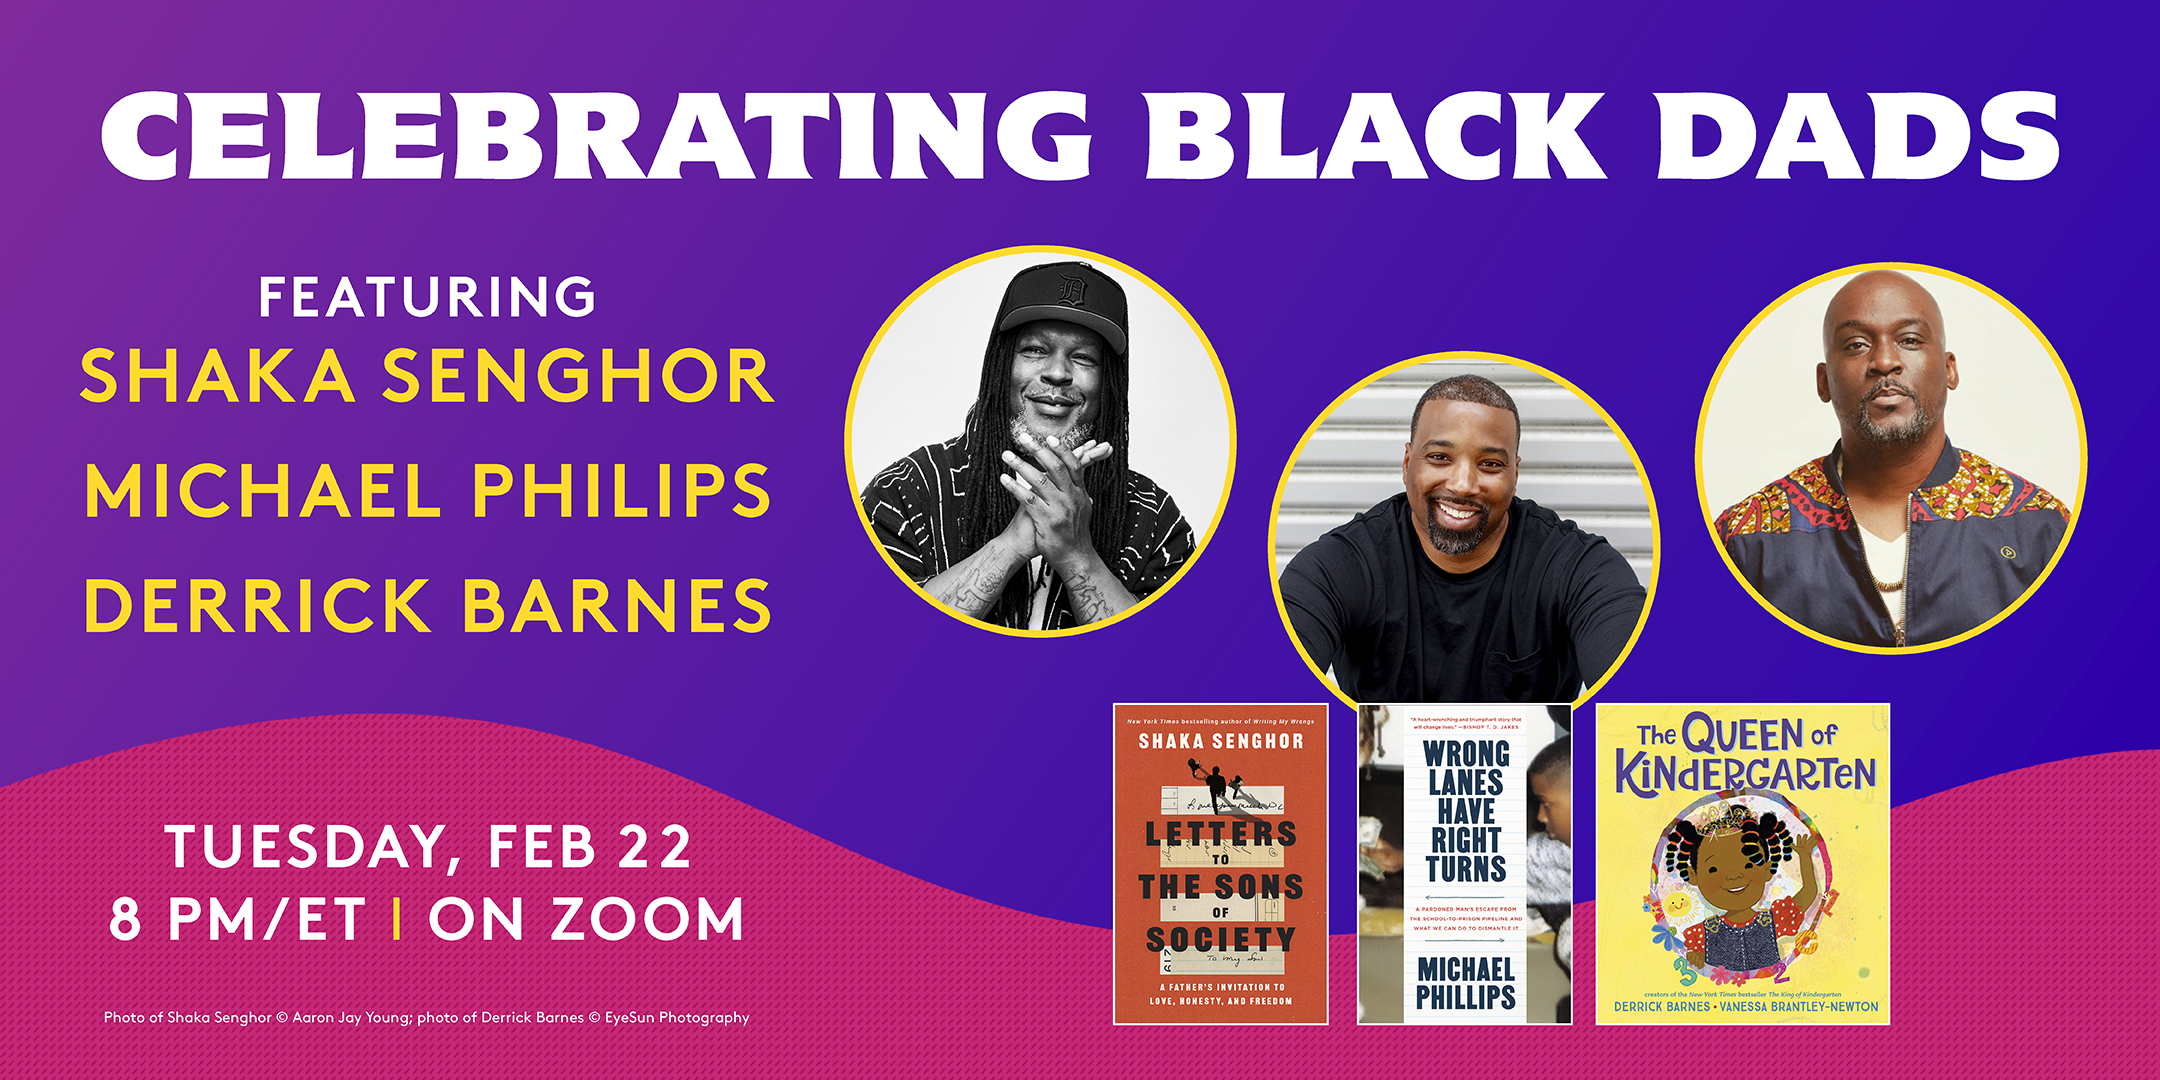 Celebrating Black Dads - A Random House Special Event, Online Event